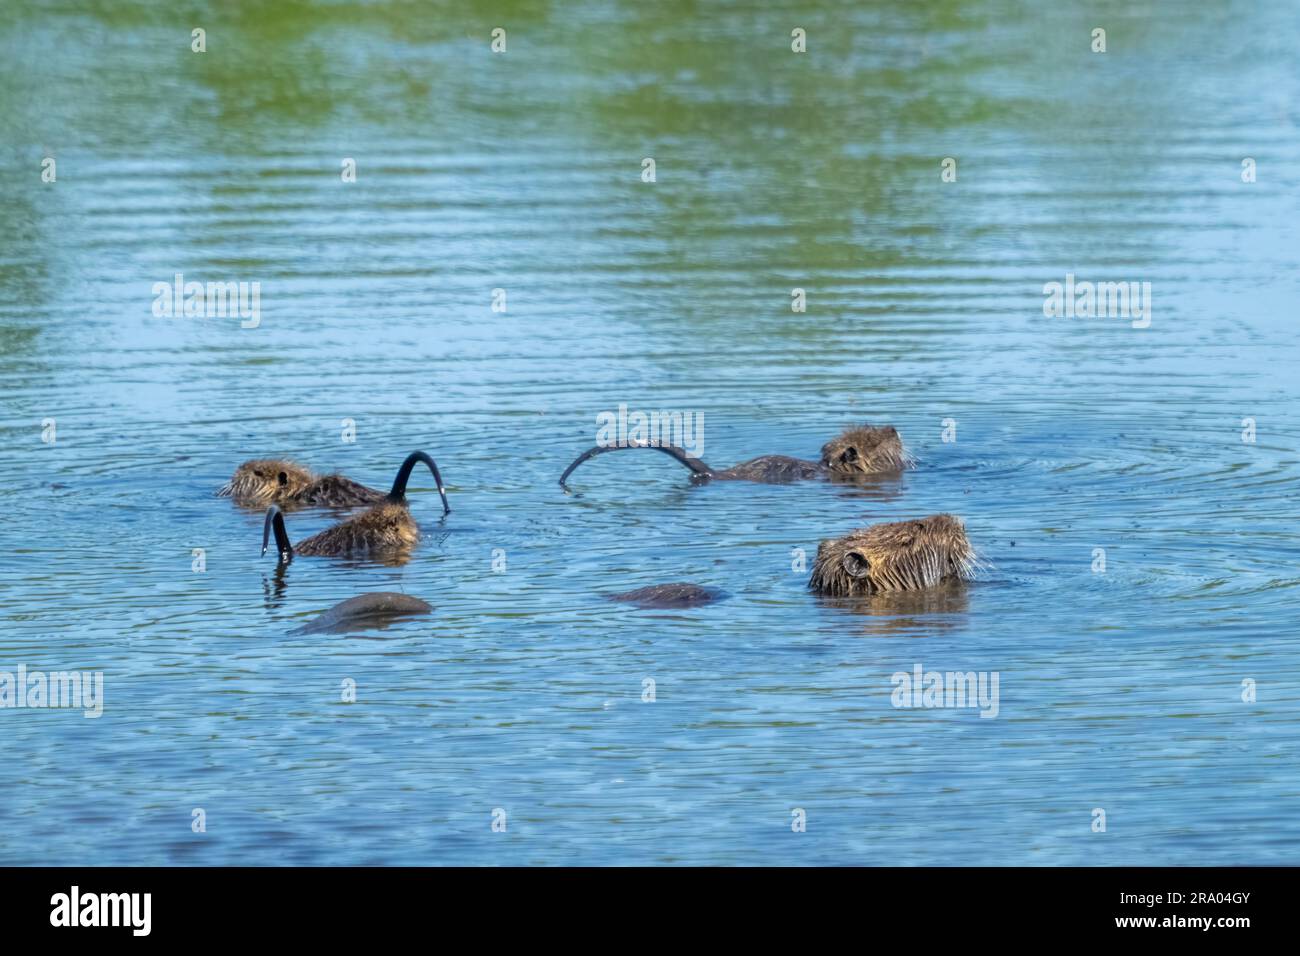 Ridgefield National Wildlife Refuge, Ridgefield, Washington, EE.UU. Madre y bebé nutria con colas elevadas, nadando en un estanque Foto de stock